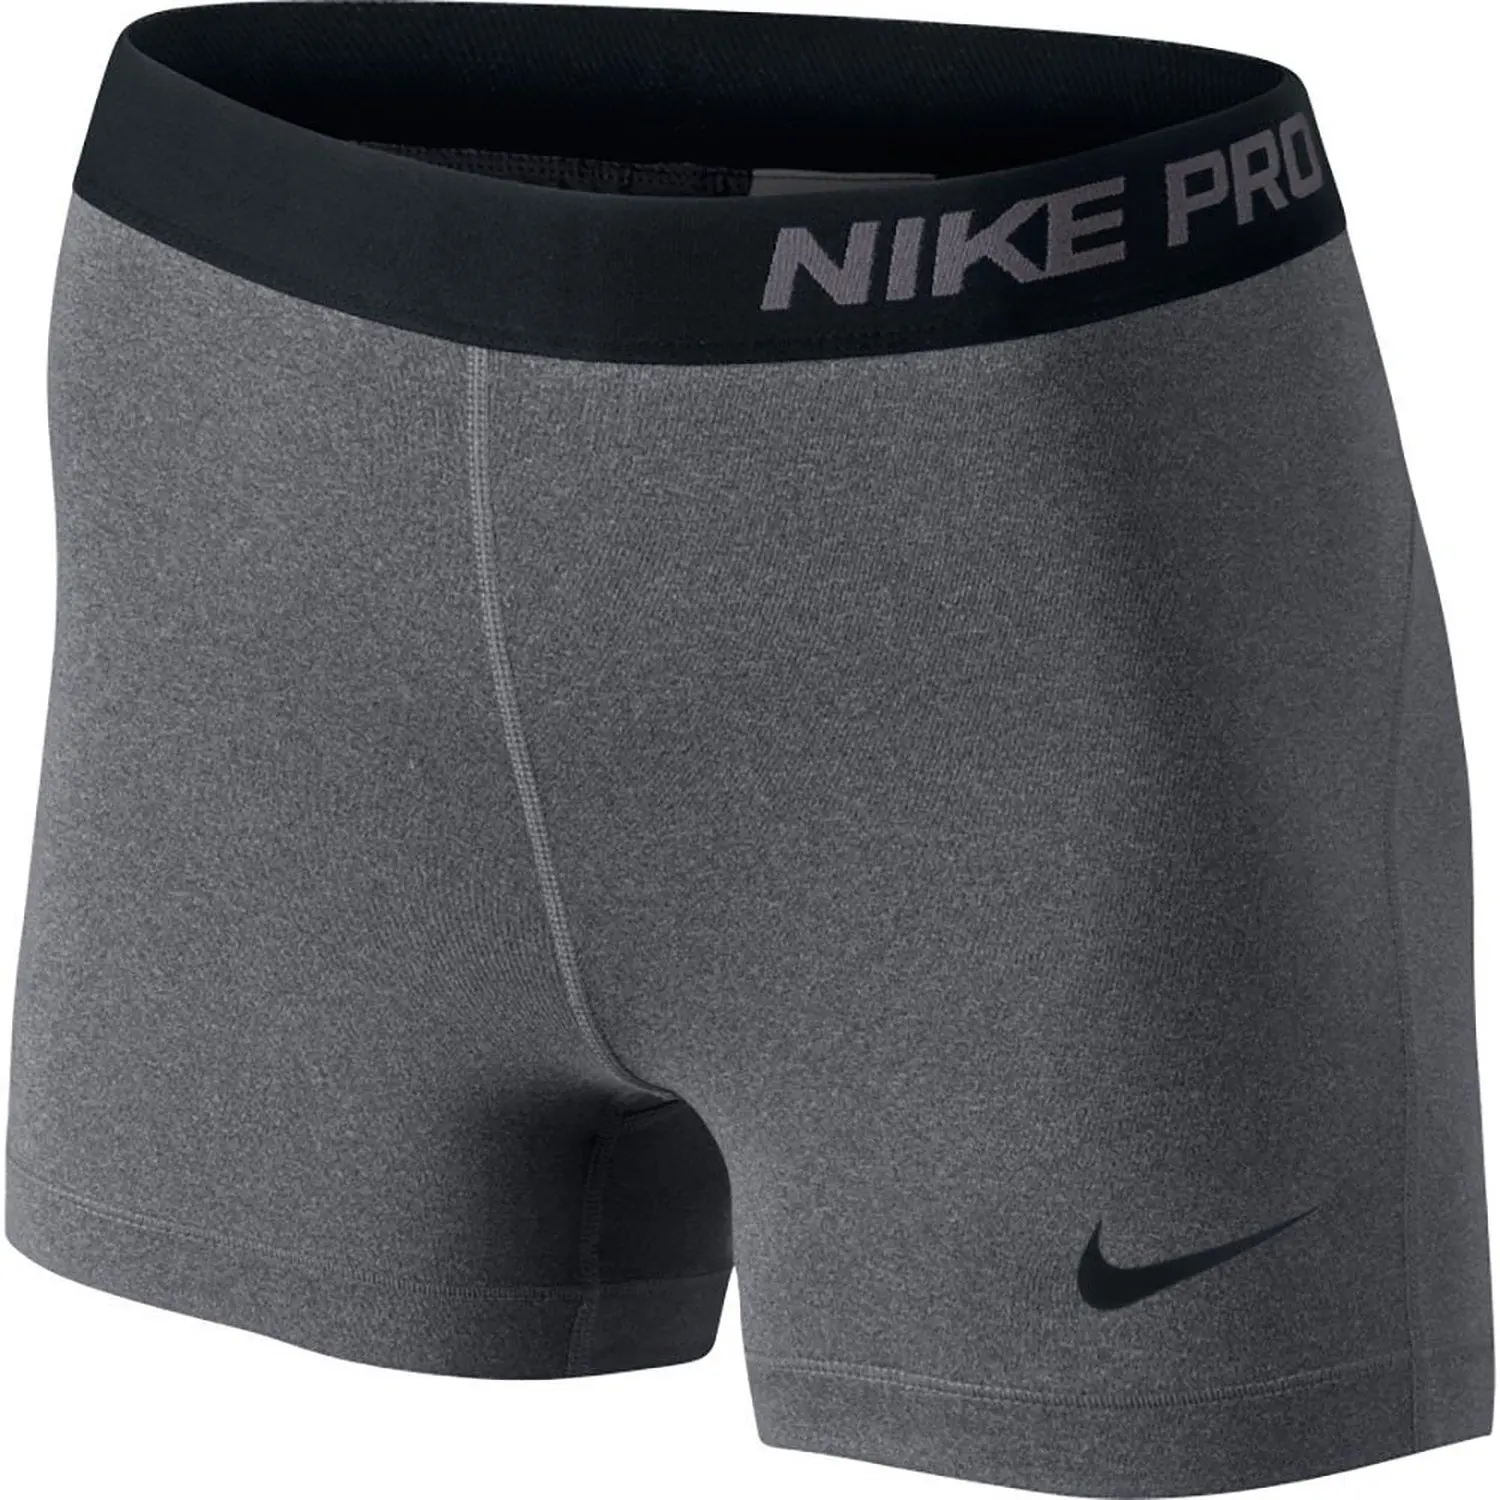 Nike Pro шорты. Велошорты мужские Nike Pro. 23 Nike Pro. Шорты Nike Pro женские.